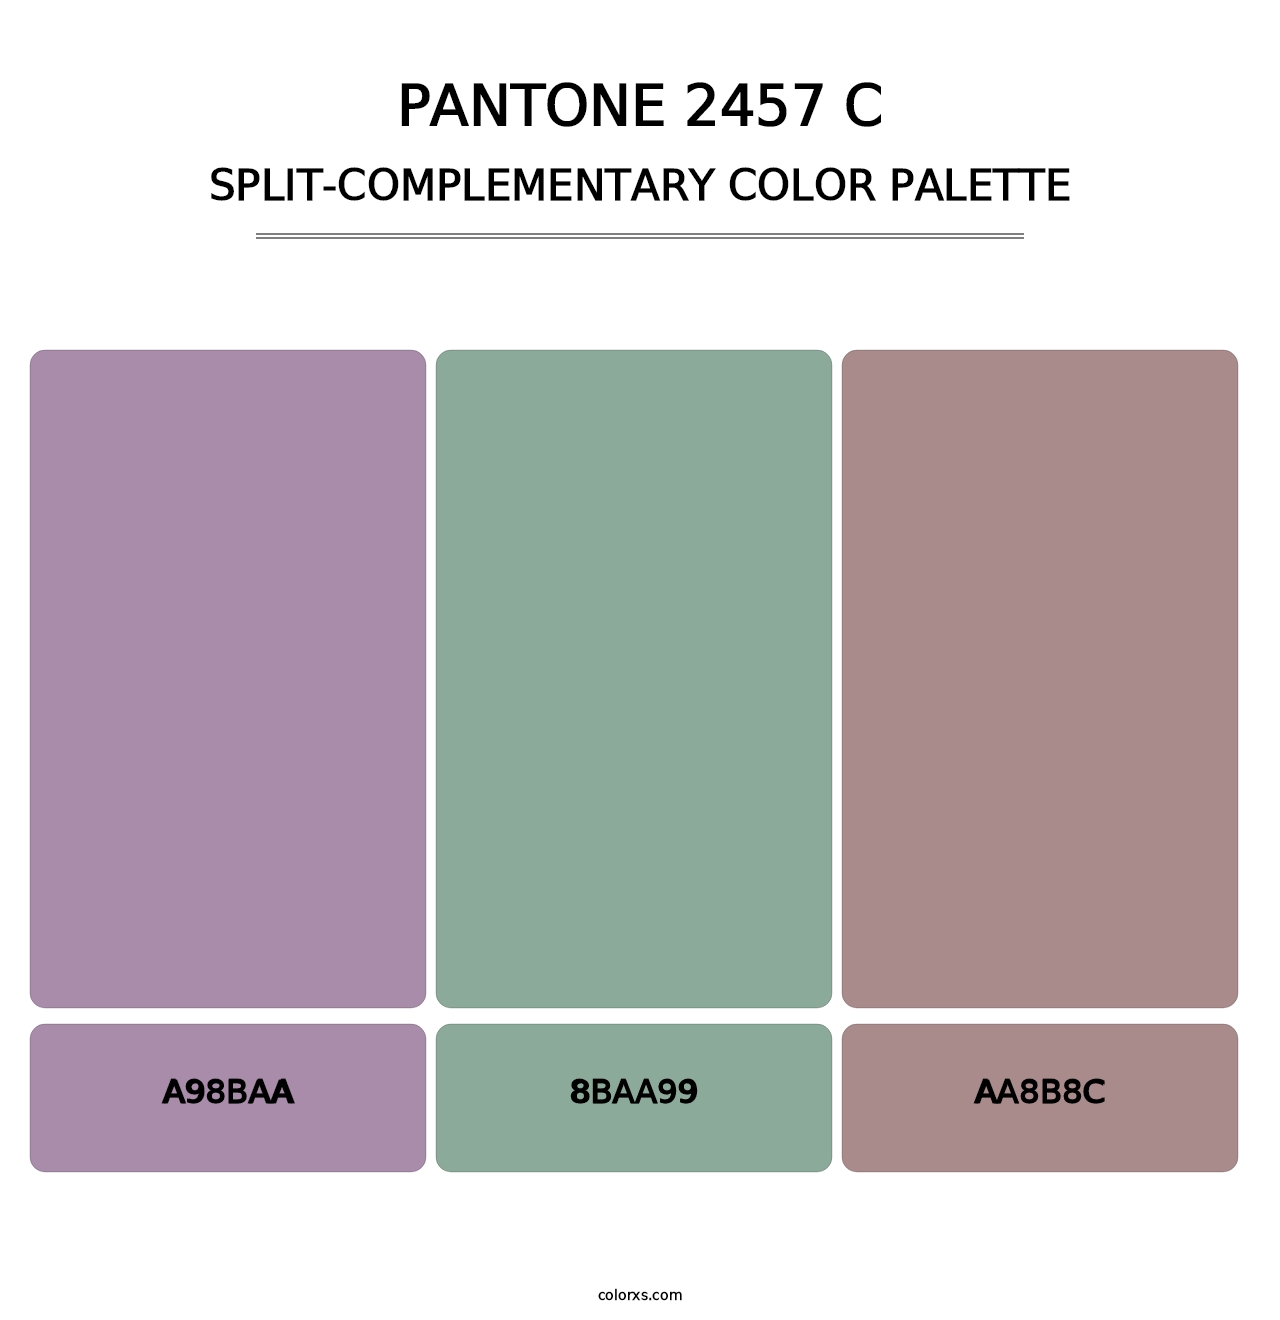 PANTONE 2457 C - Split-Complementary Color Palette